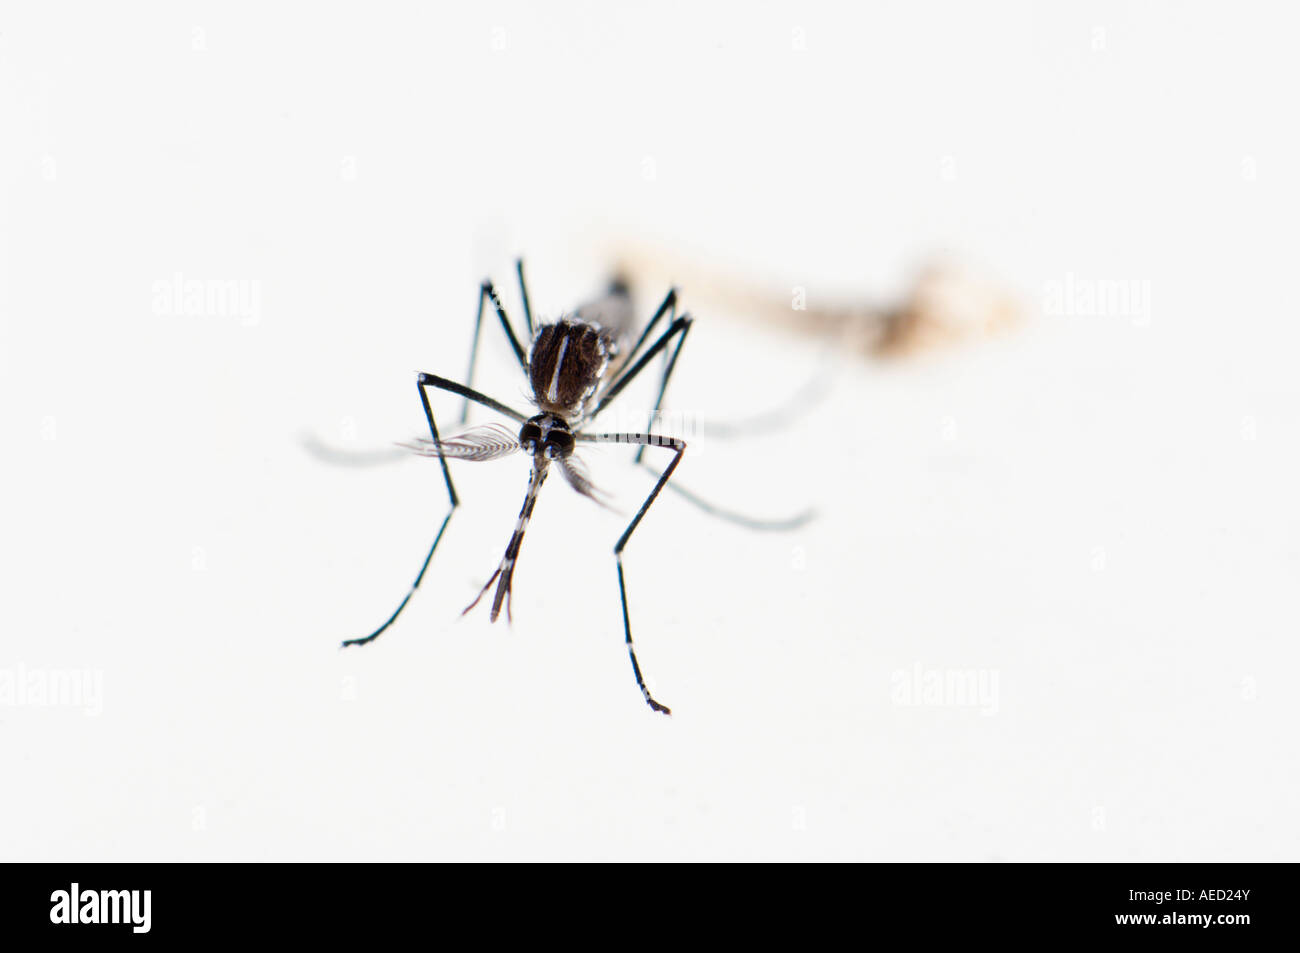 Les hommes nouvellement né Asian Tiger Mosquito (Aedes albopictus) à la surface de l'eau après avoir émergé de la nymphe. Peau nymphale visible Banque D'Images